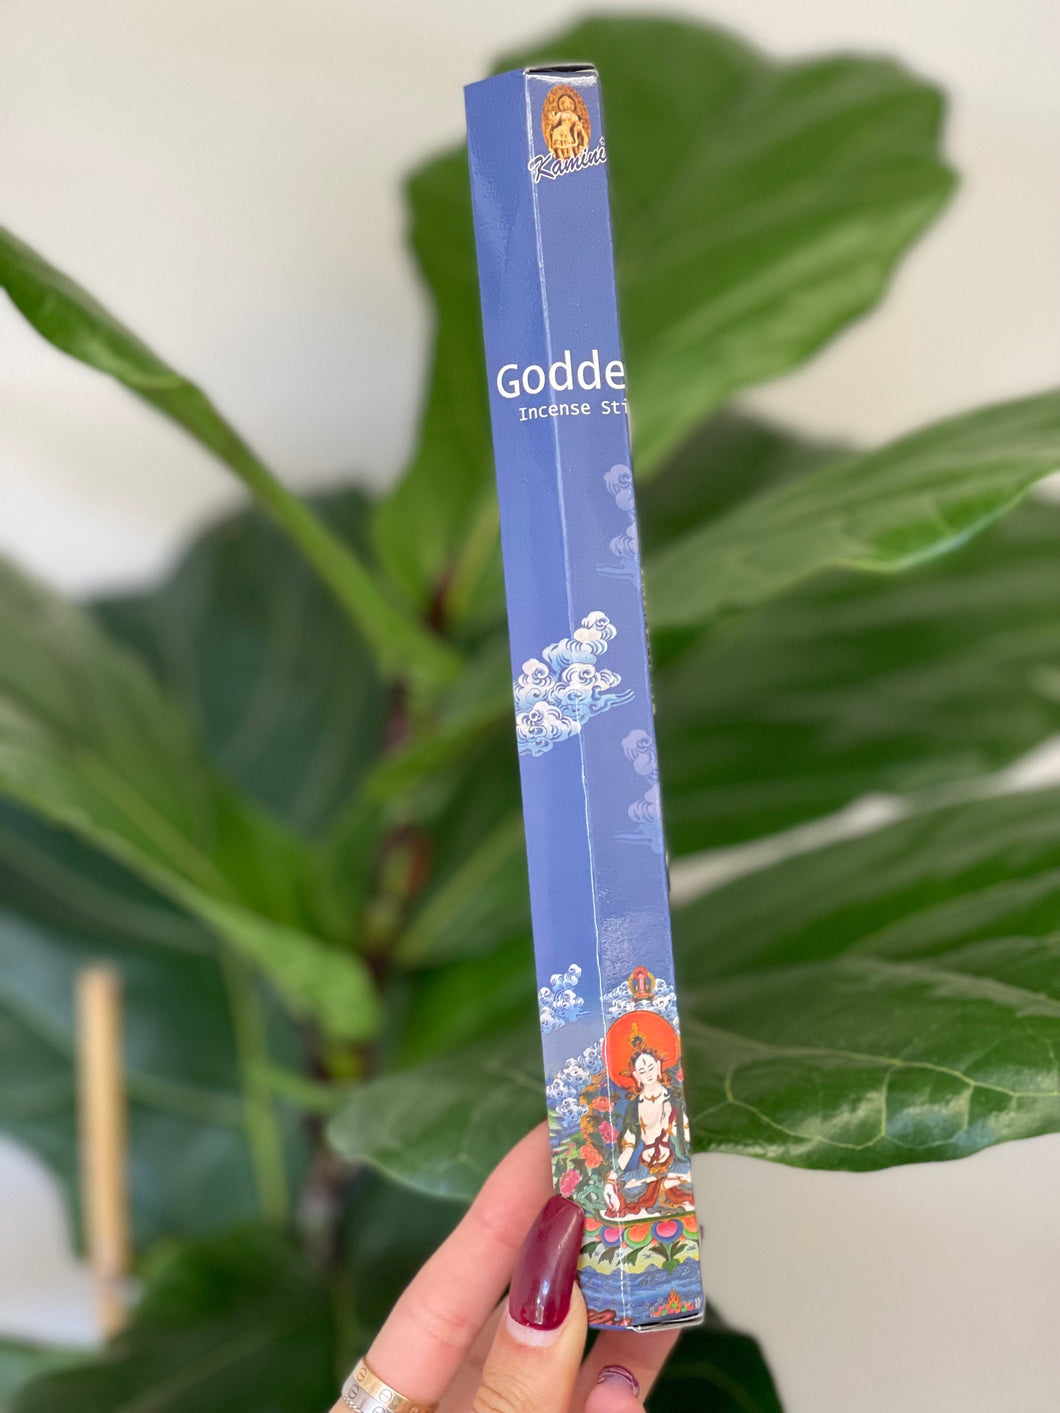 Goddess Incense Sticks + Goddess Incense Sticks